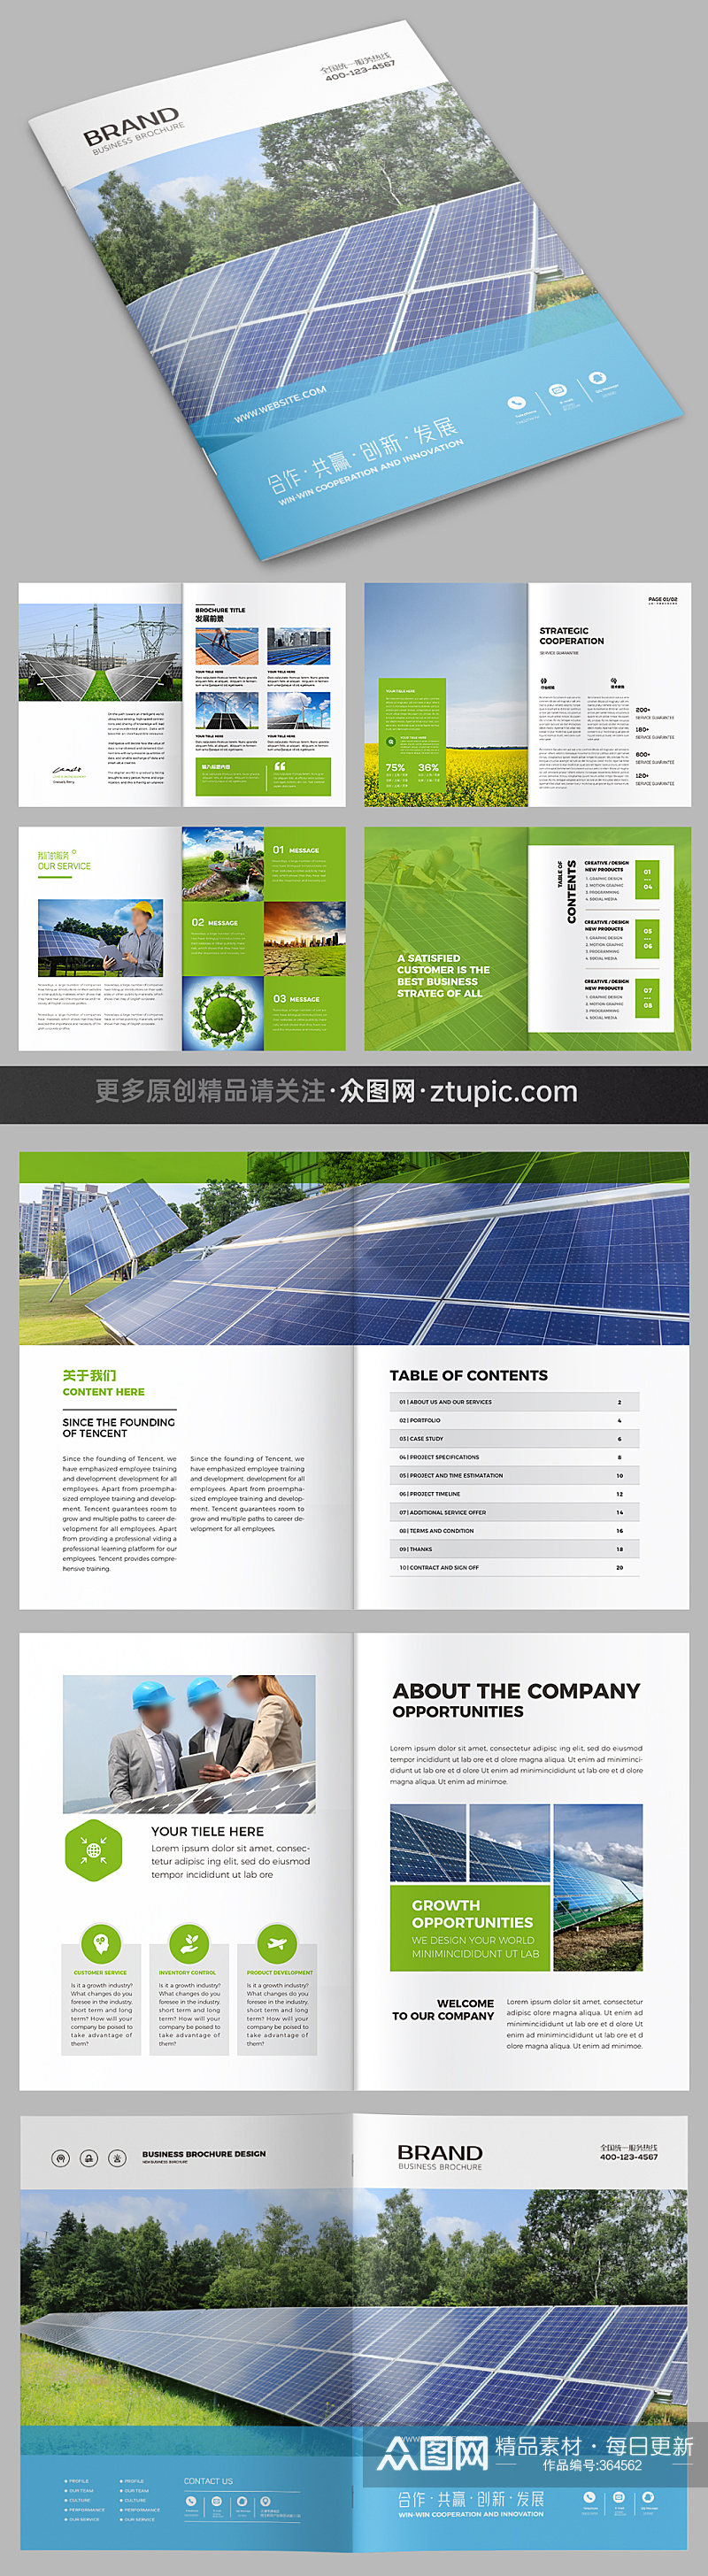 环保画册企业画册能源画册素材